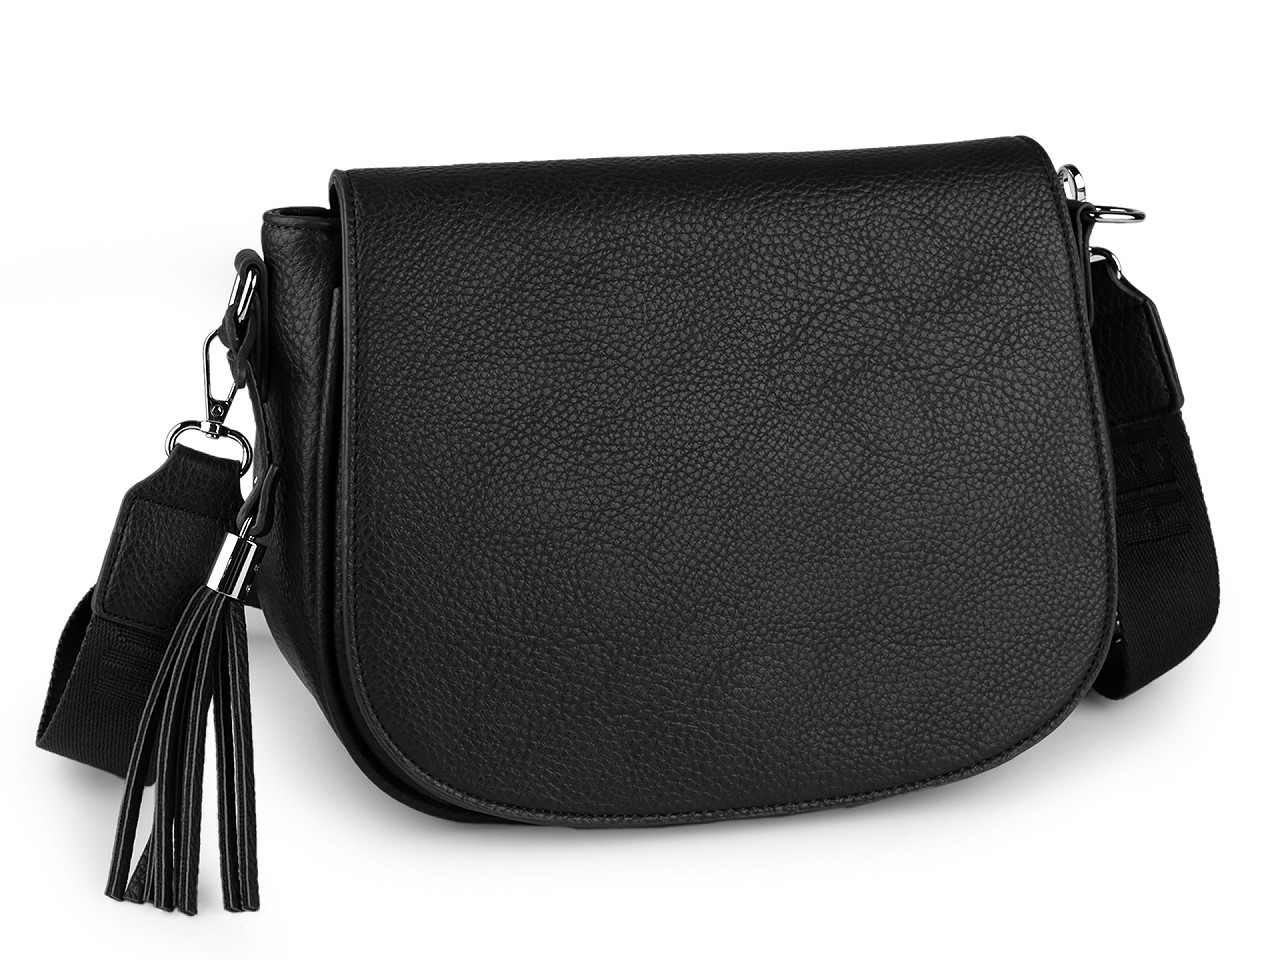 Dámská kabelka crossbody s popruhem 26x21 cm, barva 13 černá